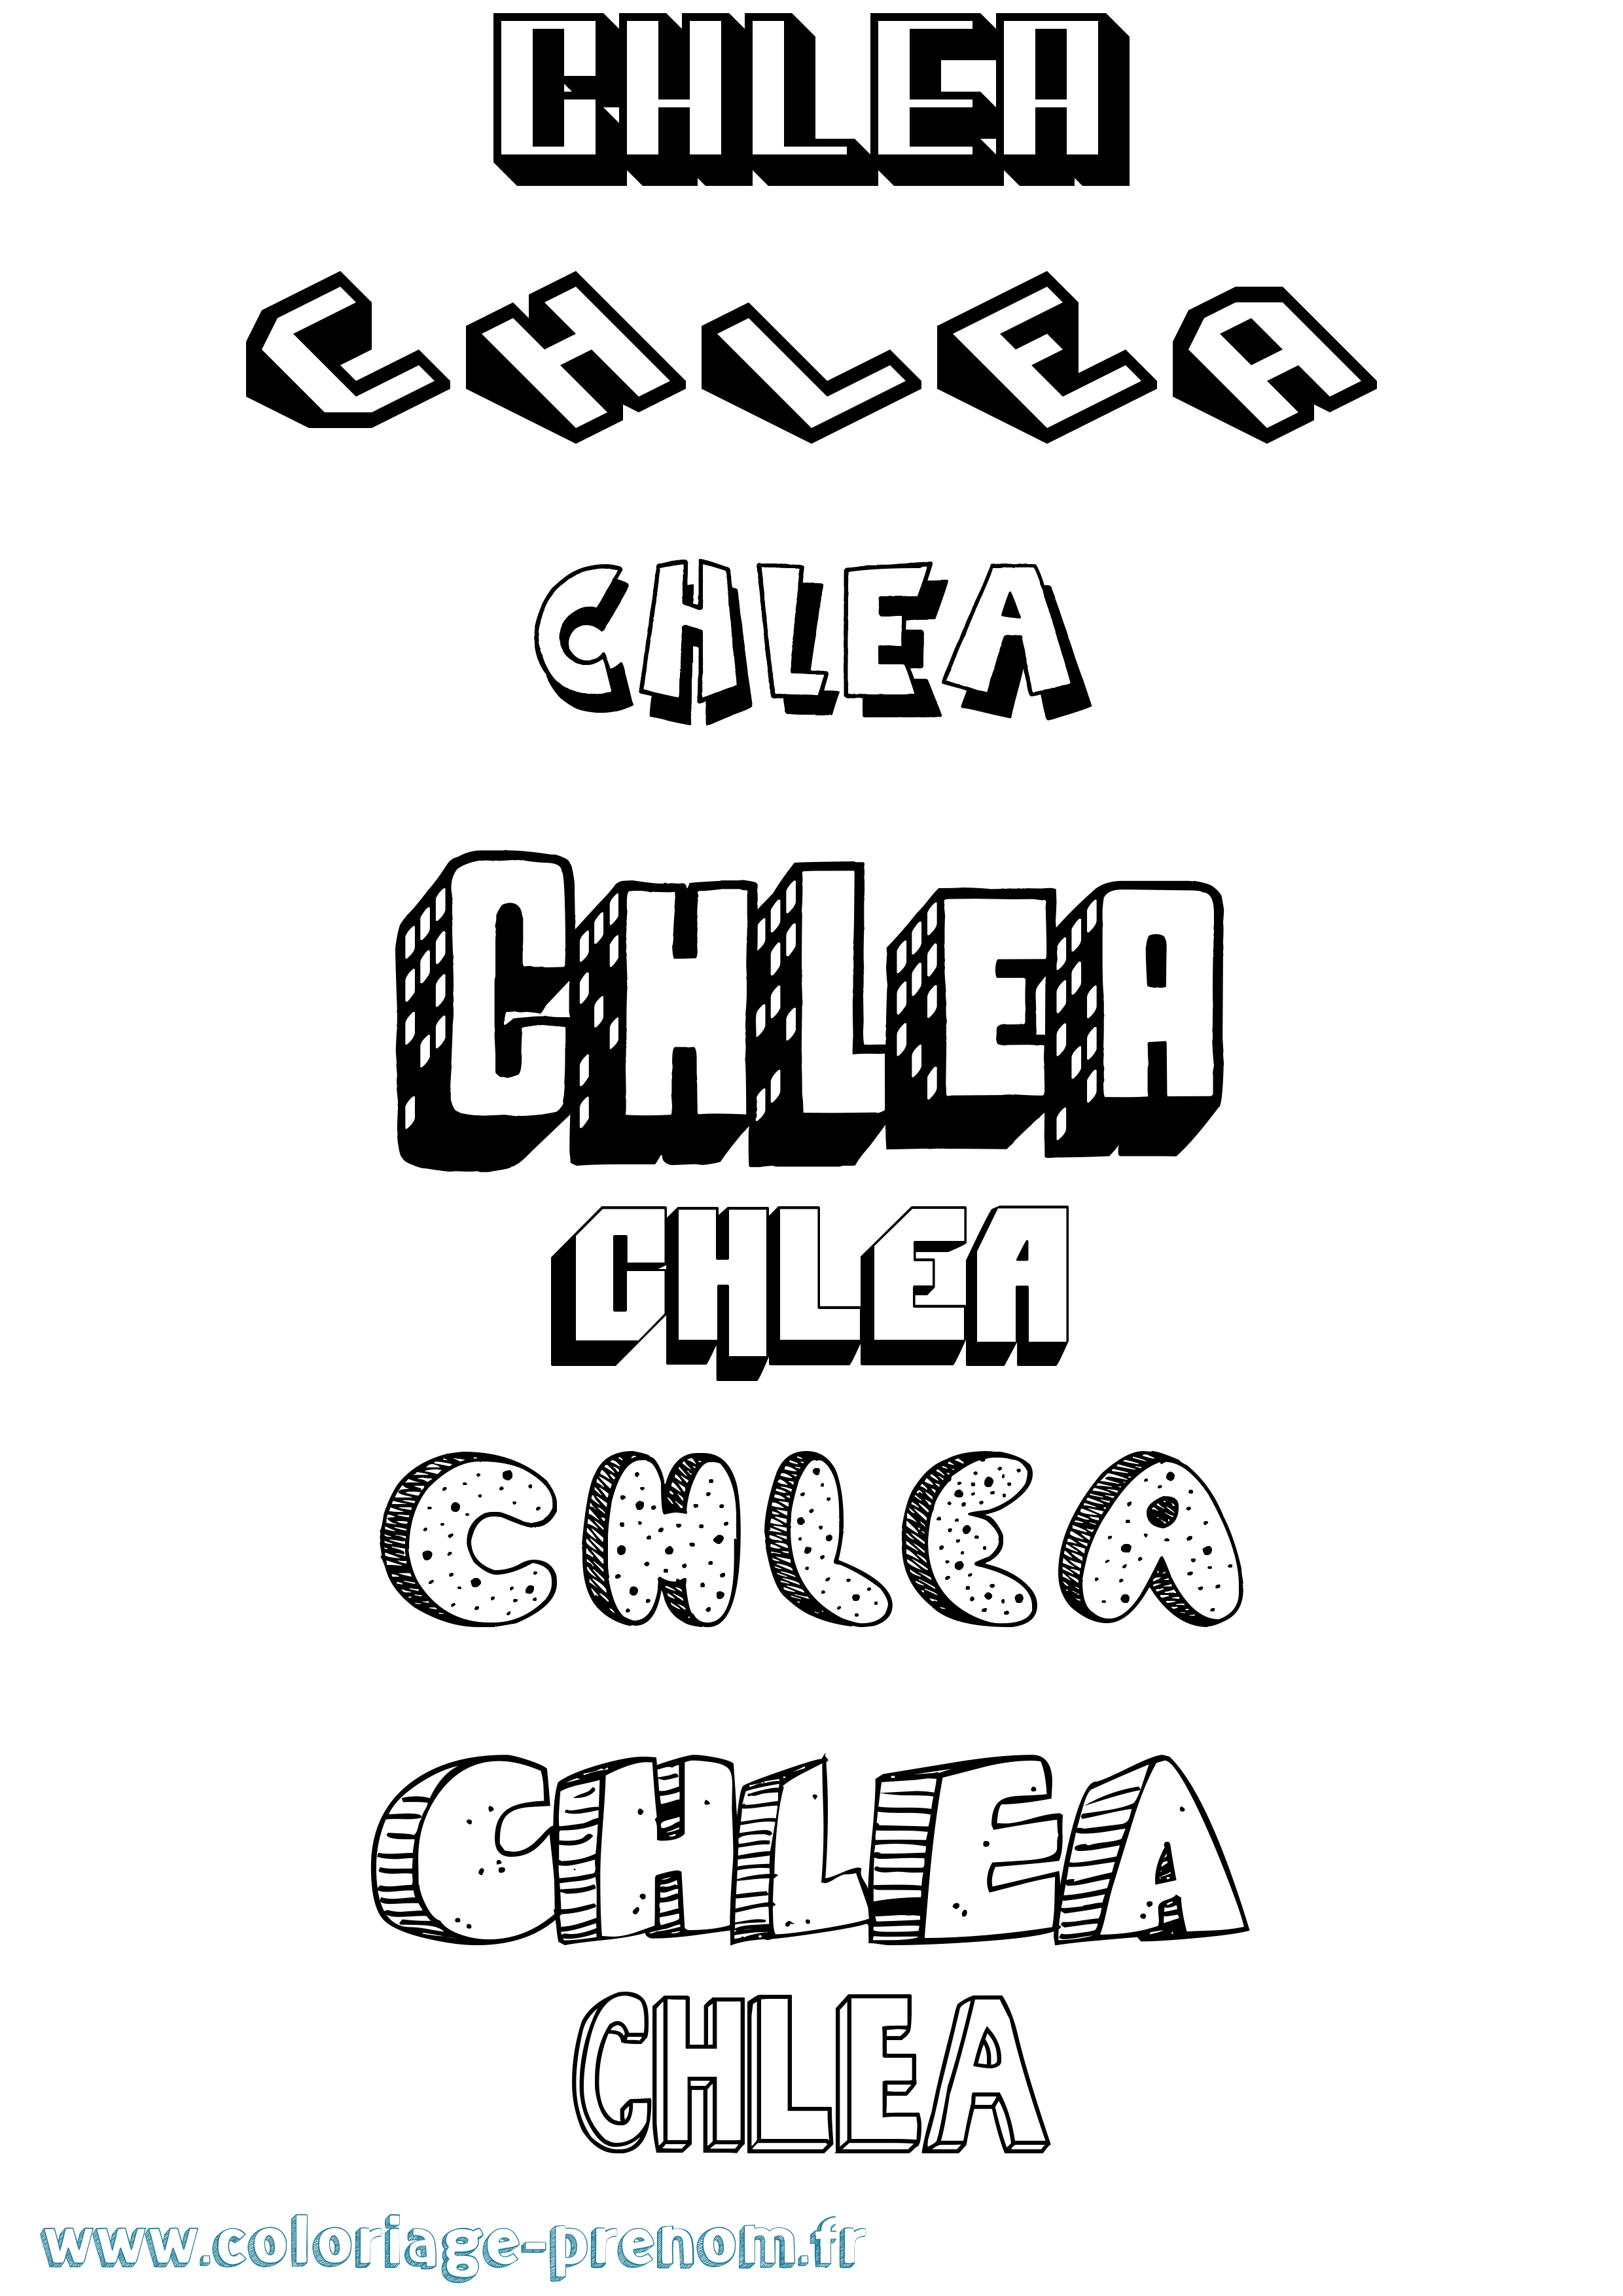 Coloriage prénom Chlea Effet 3D